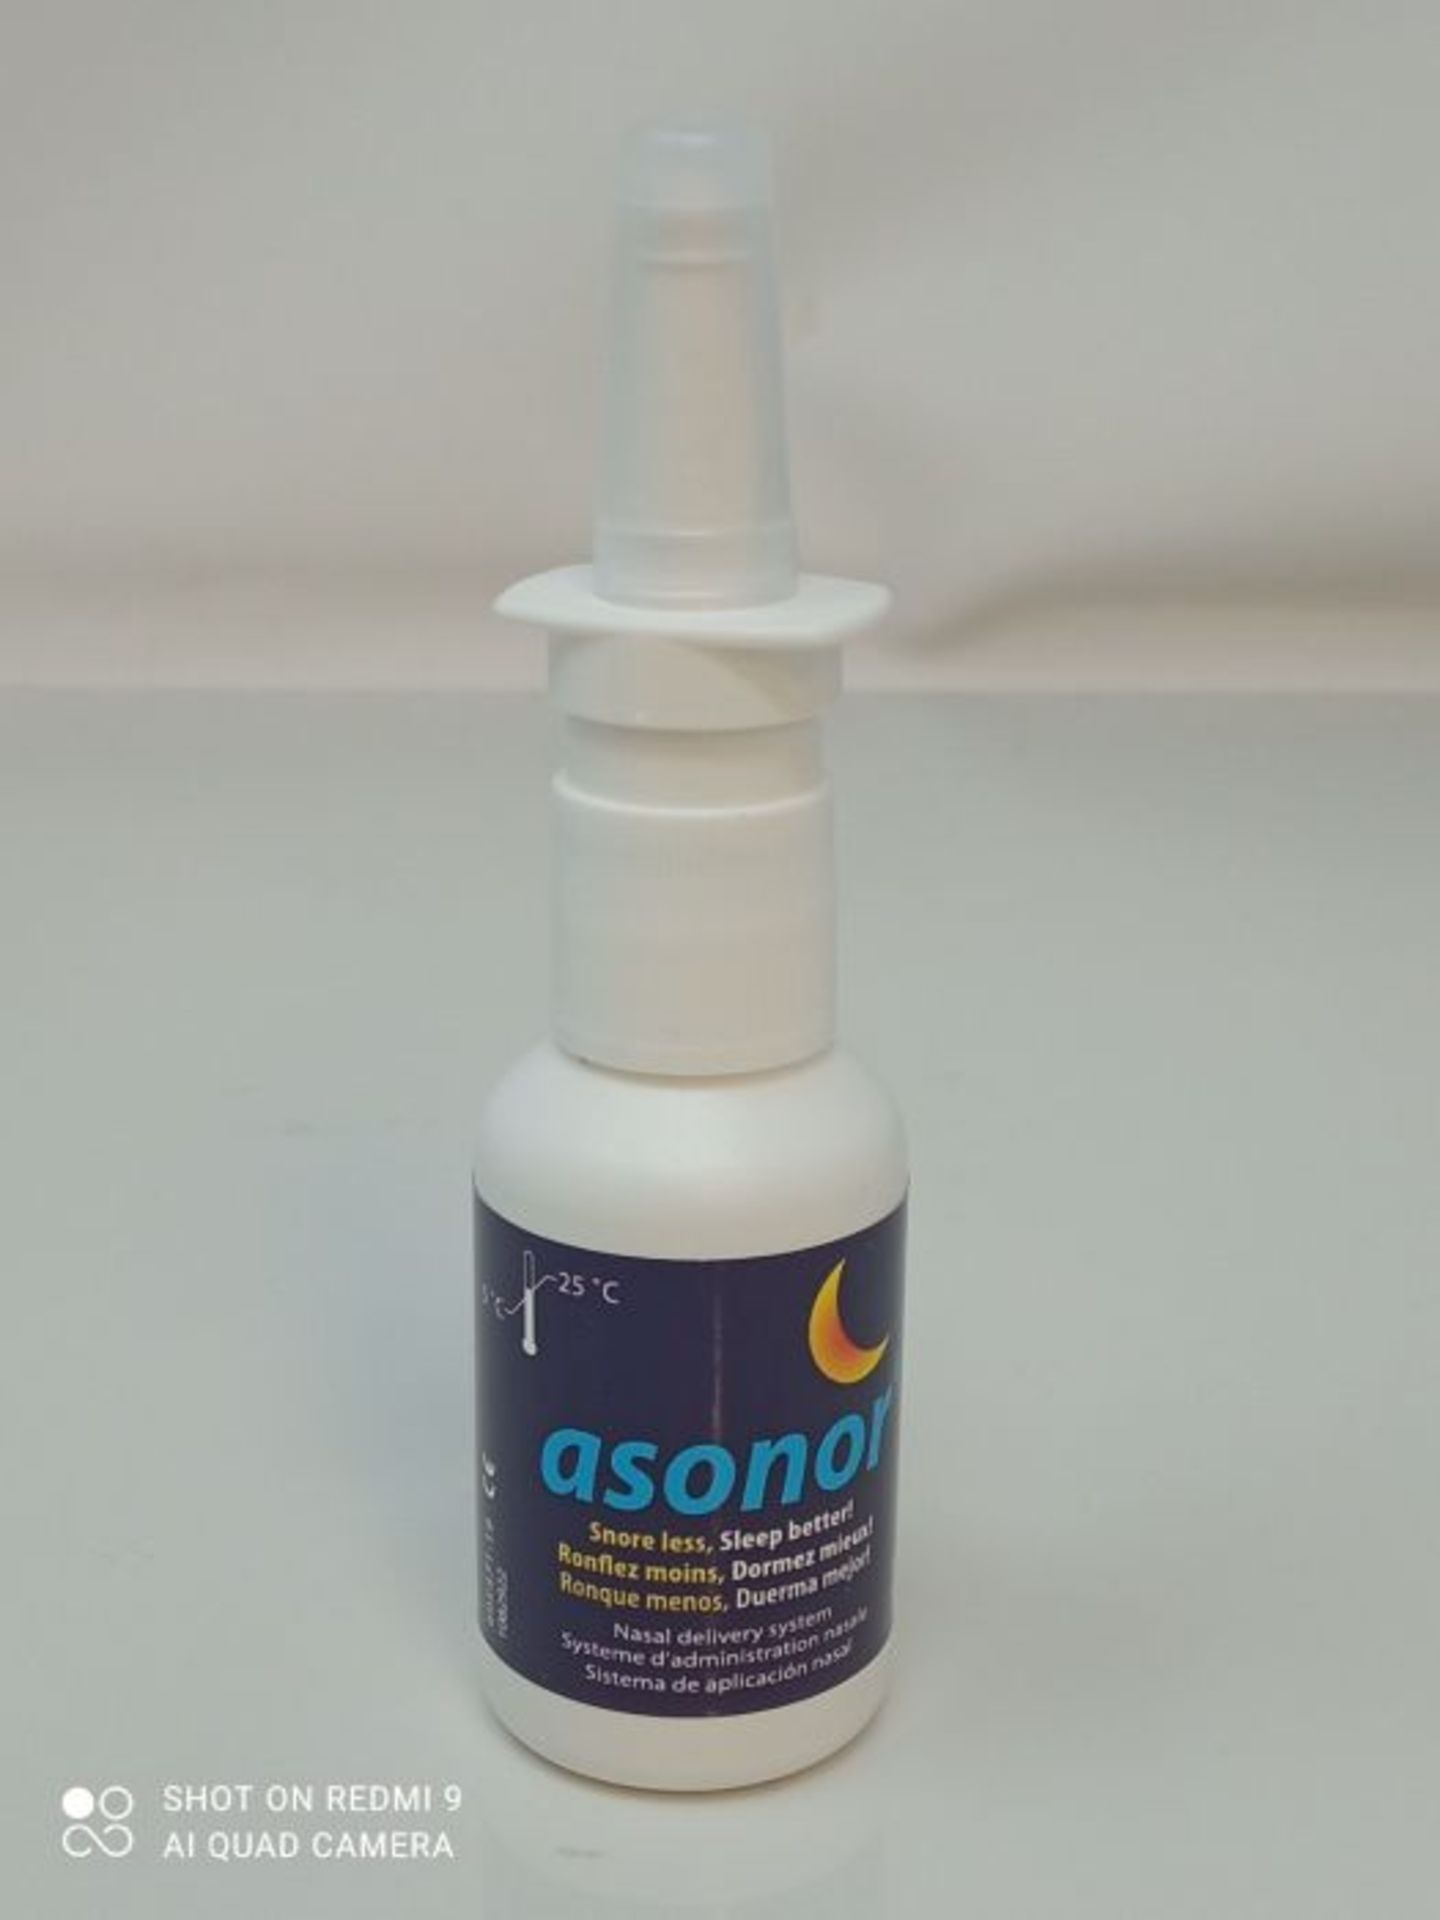 Asonor Snoring Nasal Spray (30ml)  Effective Snore Stopper Drops for Better Sleep ? - Image 2 of 3